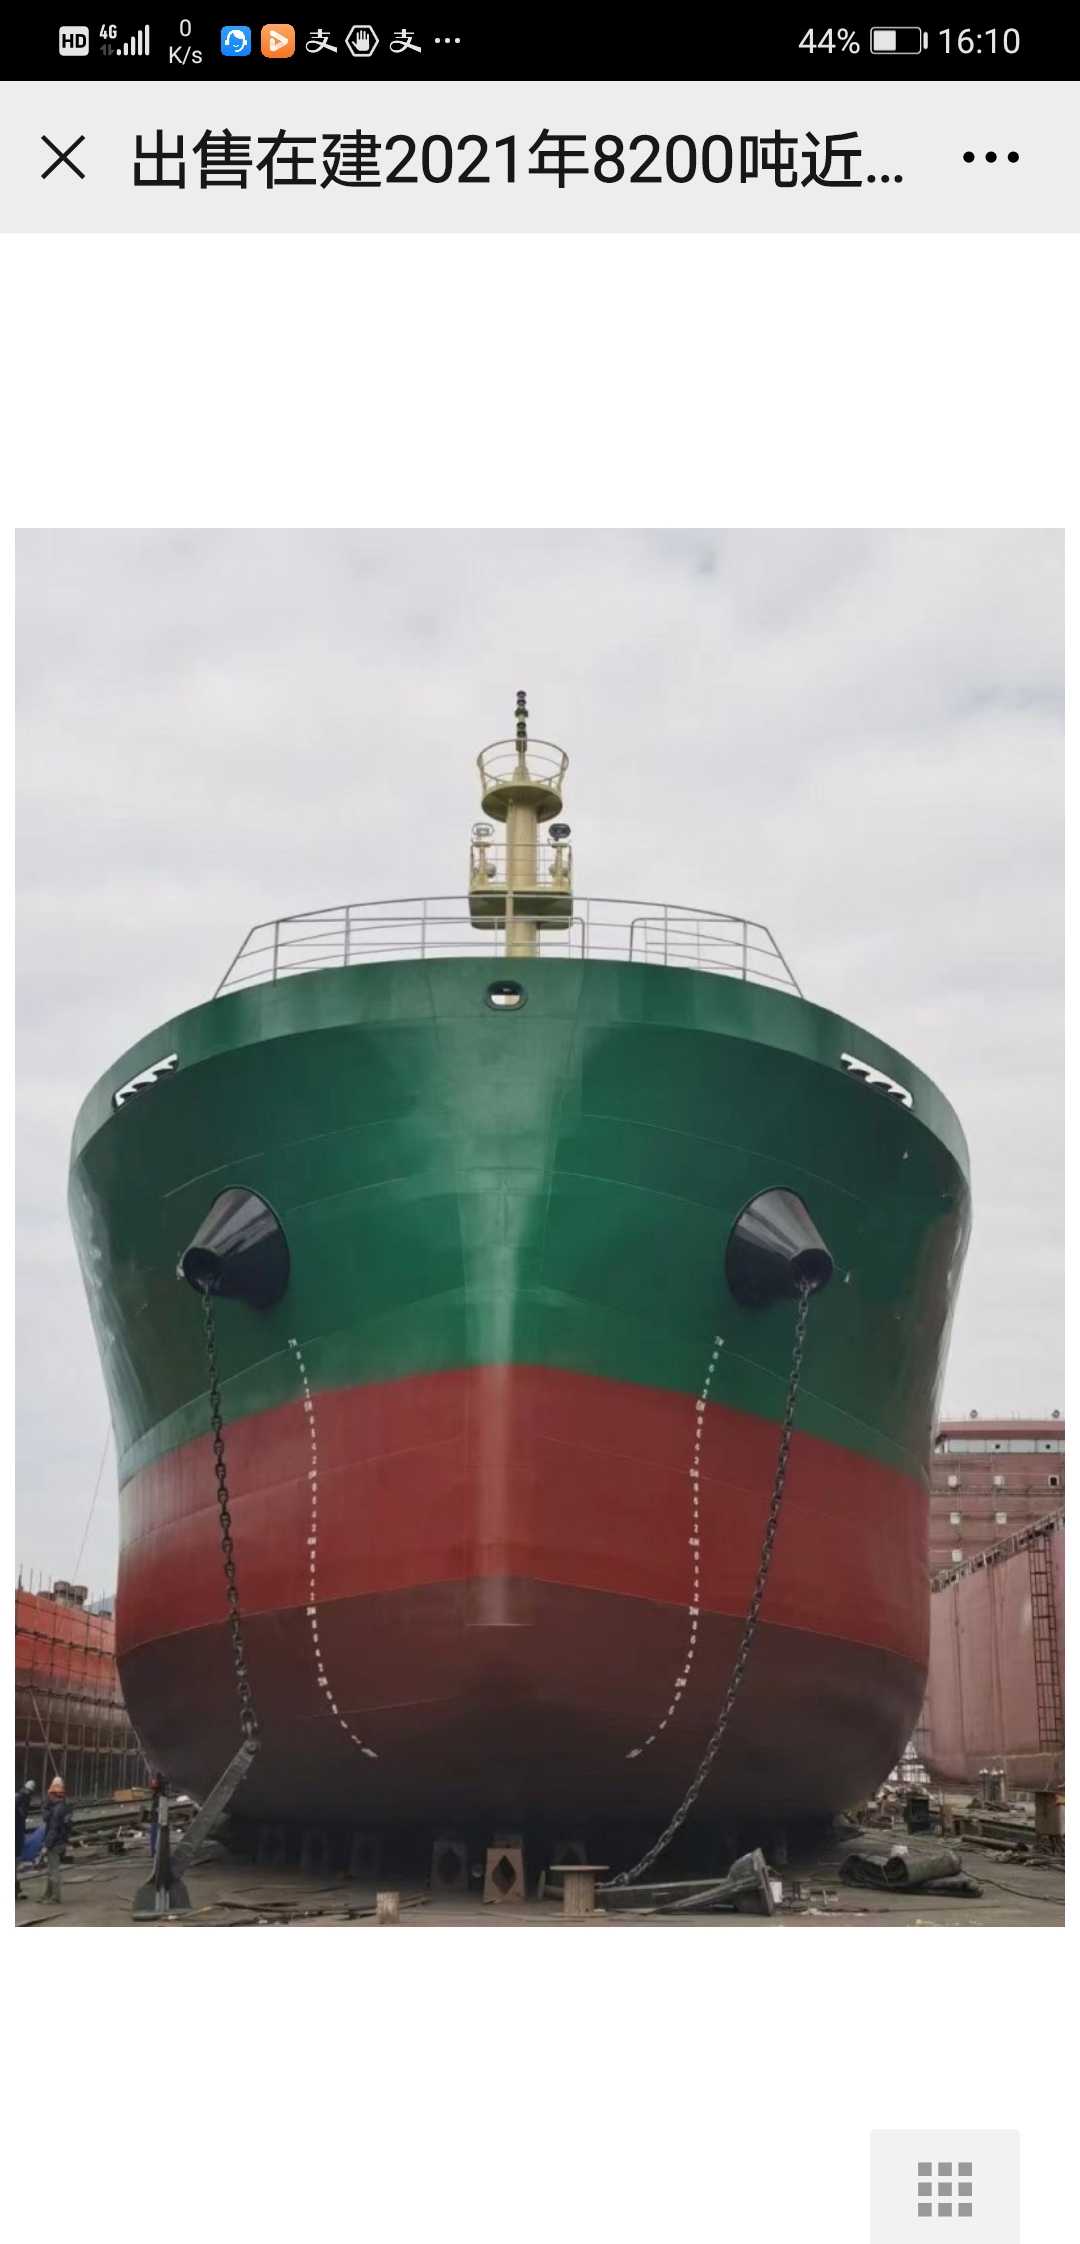 散货船8200吨新